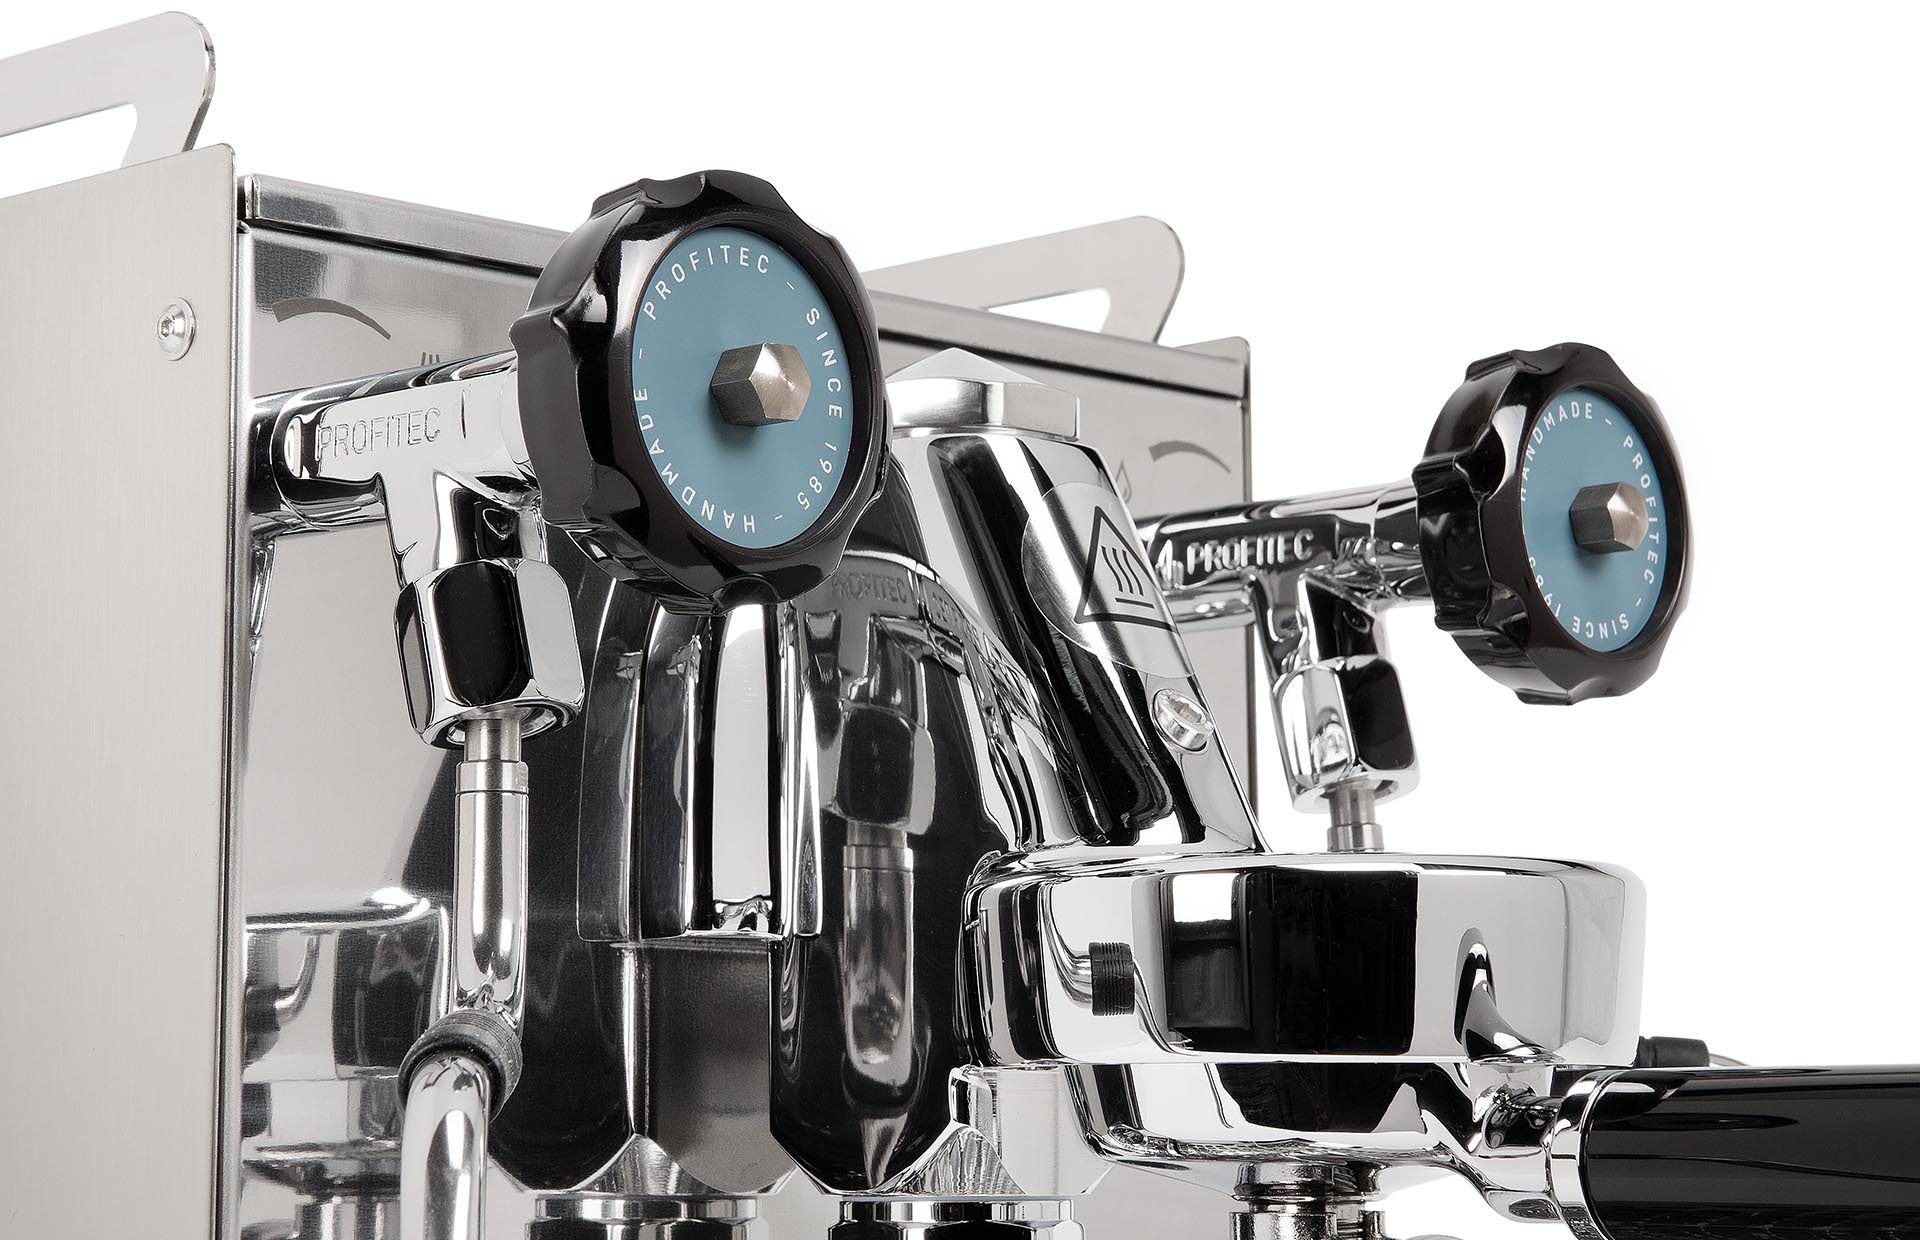 Profitec Pro 400 Zweikreiser Espressomaschine